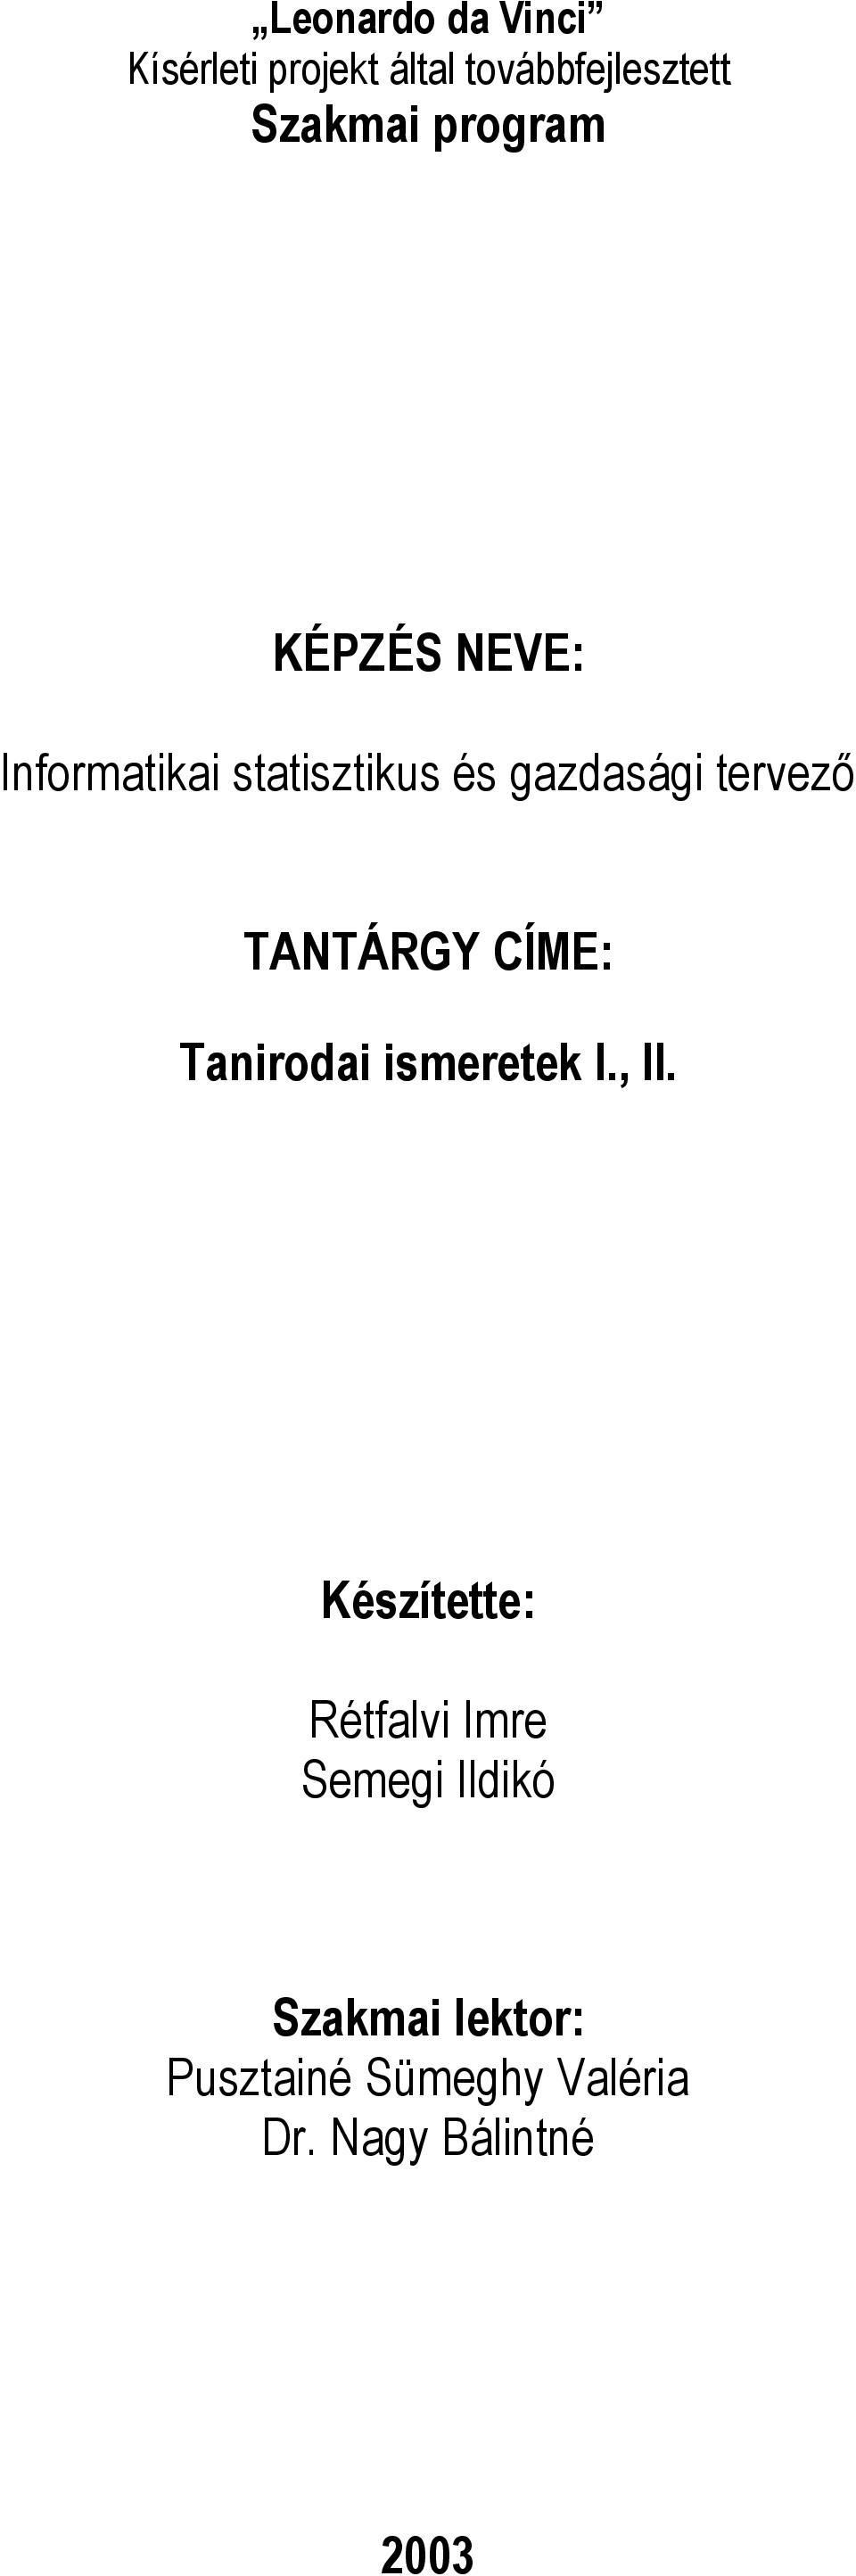 TANTÁRGY CÍME: Tanirodai ismeretek I., II.